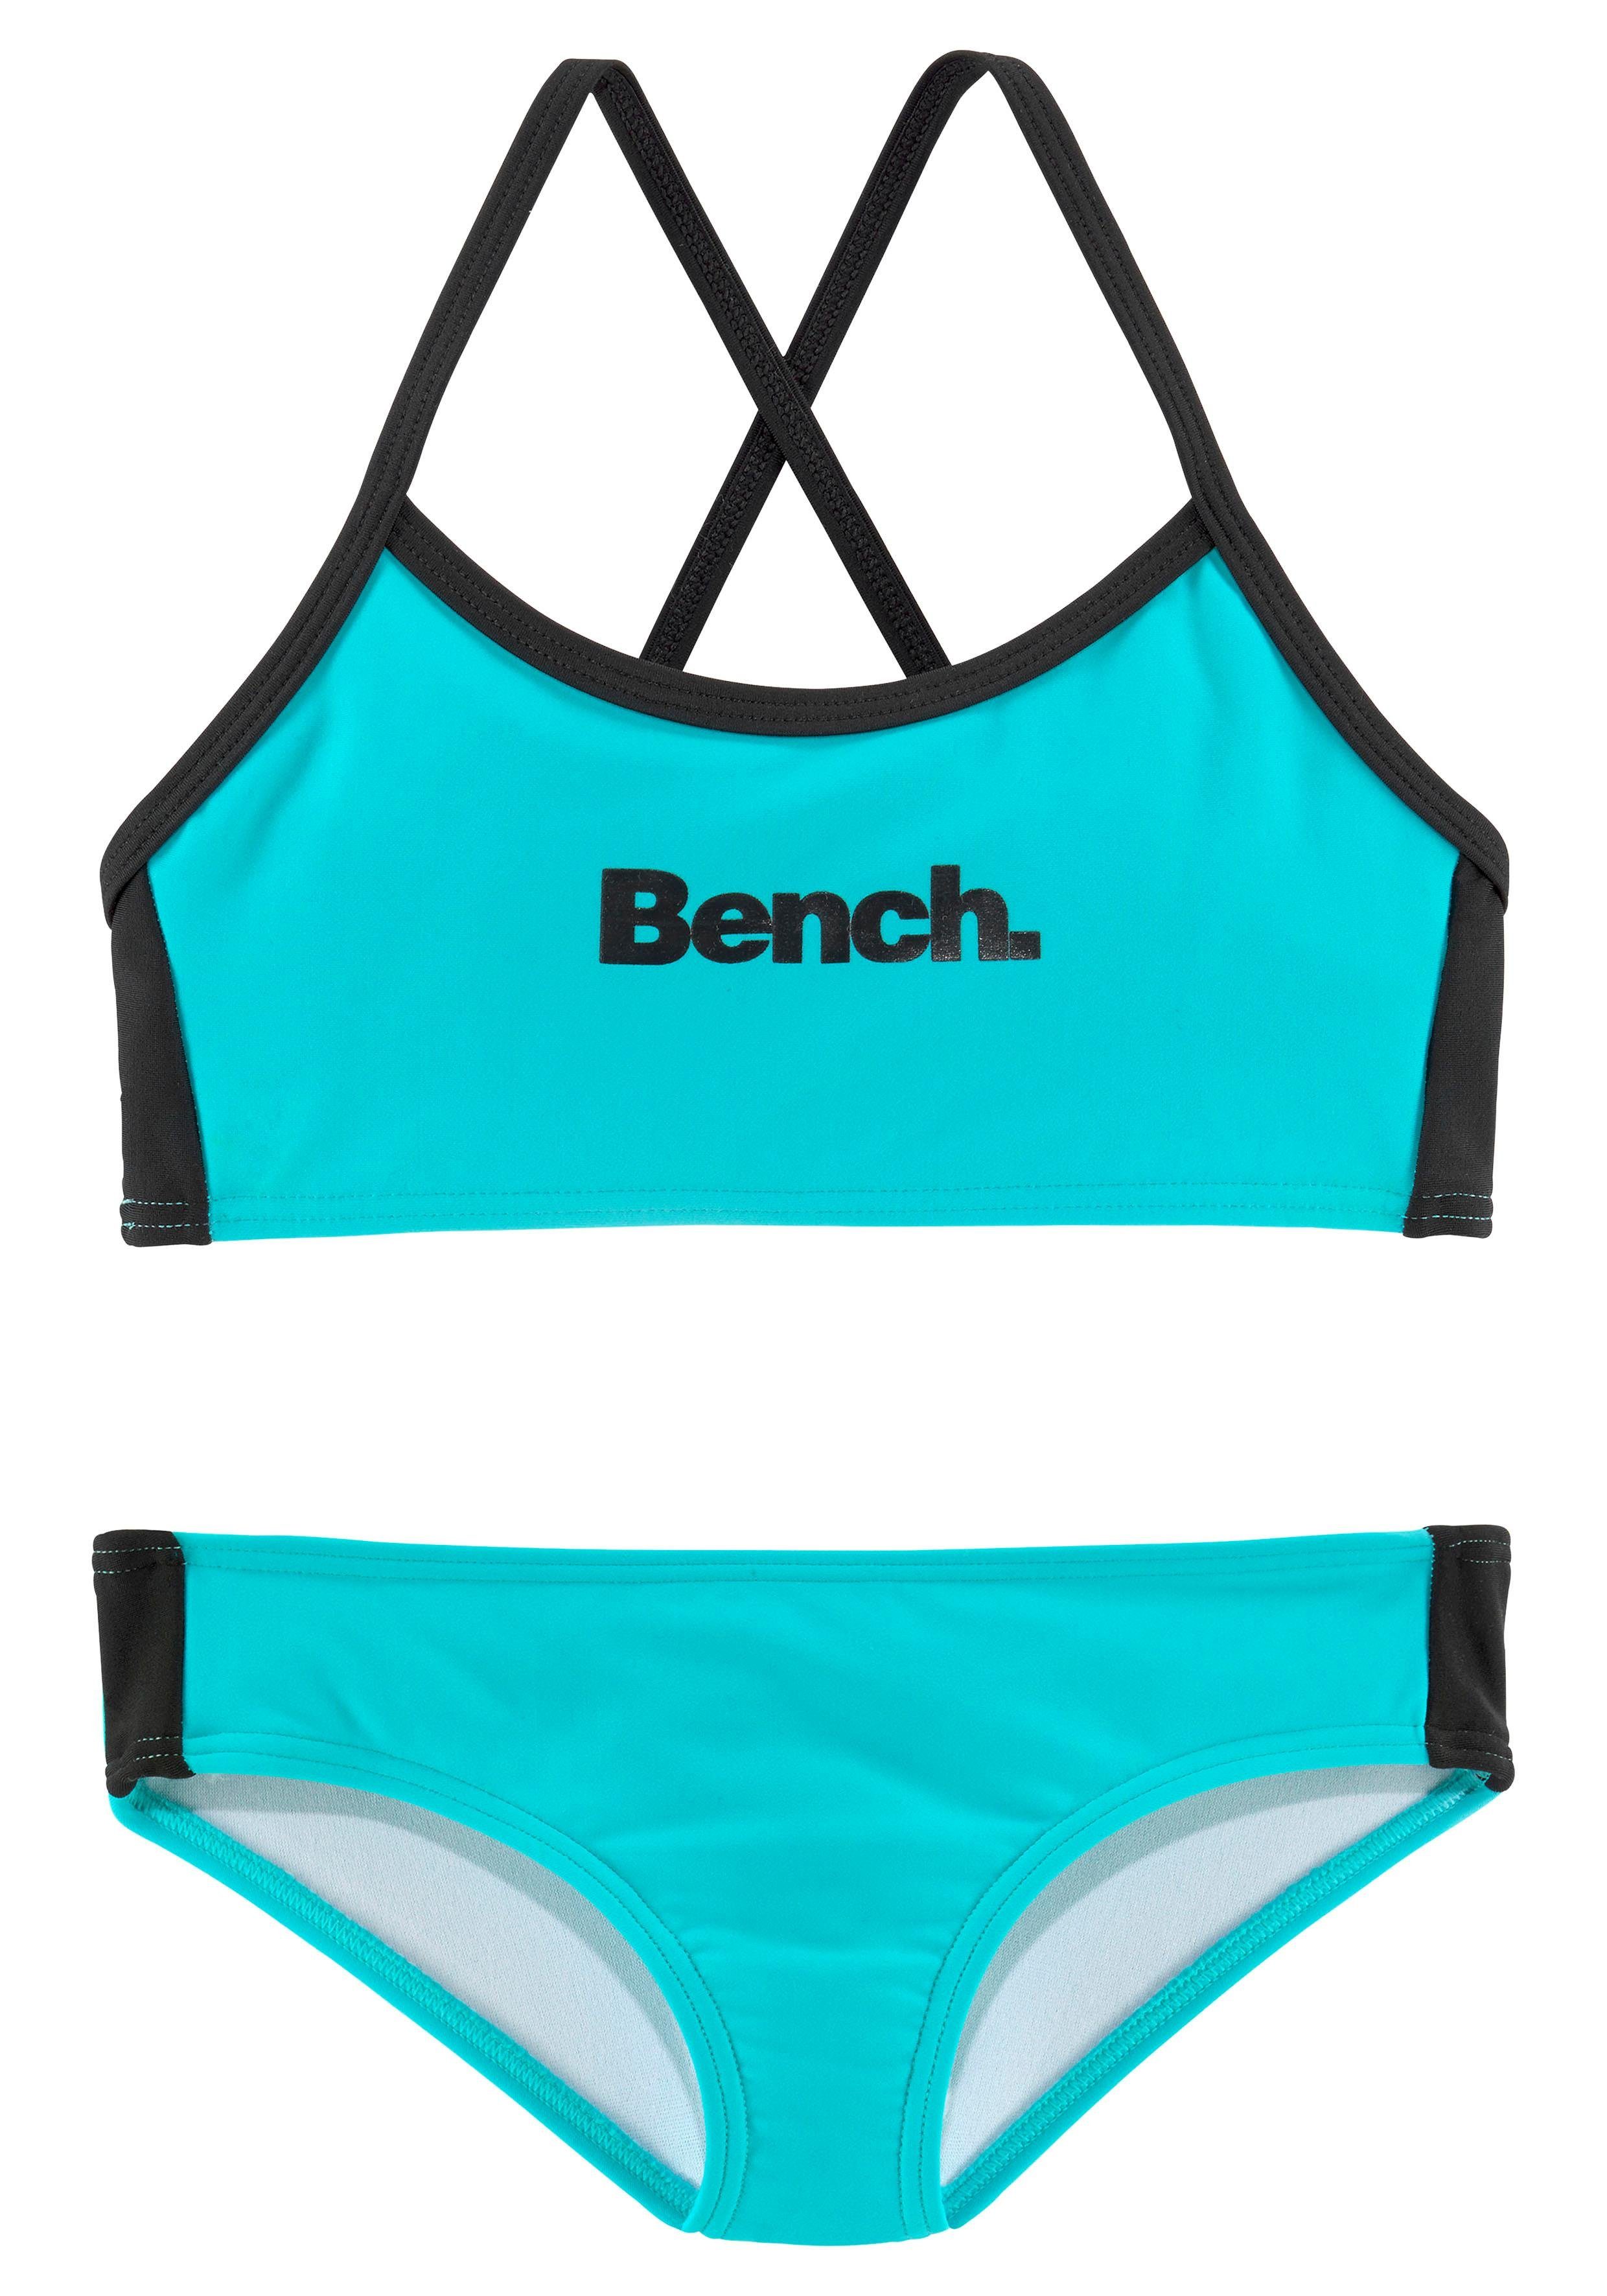 Bench. Bustier-Bikini mit gekreuzten Trägern